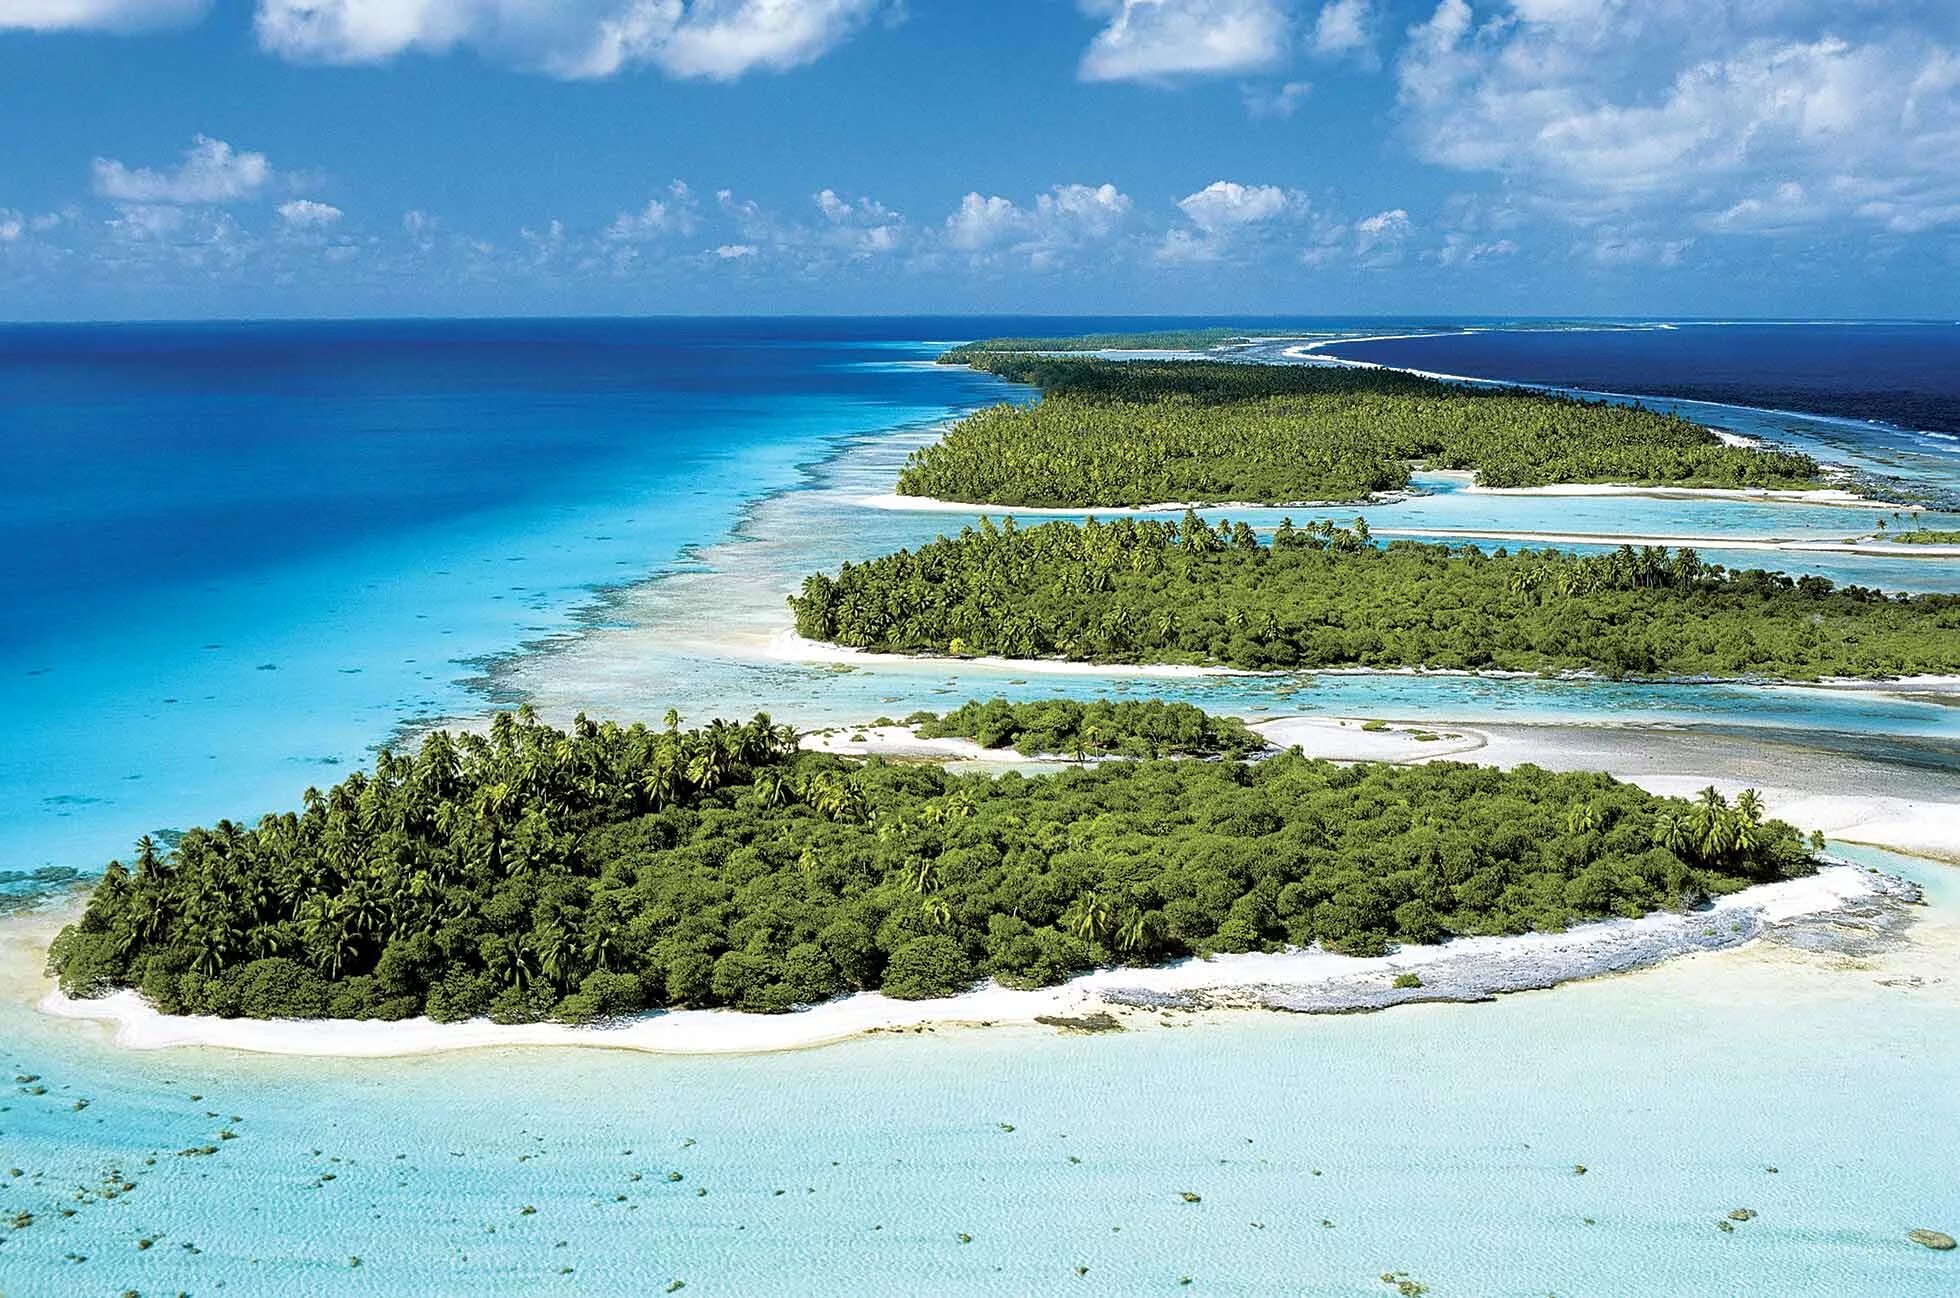 Крупнейшие архипелаги тихого океана. Архипелаг Туамоту, французская Полинезия. Атолл Рангироа. Рангироа остров. Группа островов в архипелаге Туамоту.